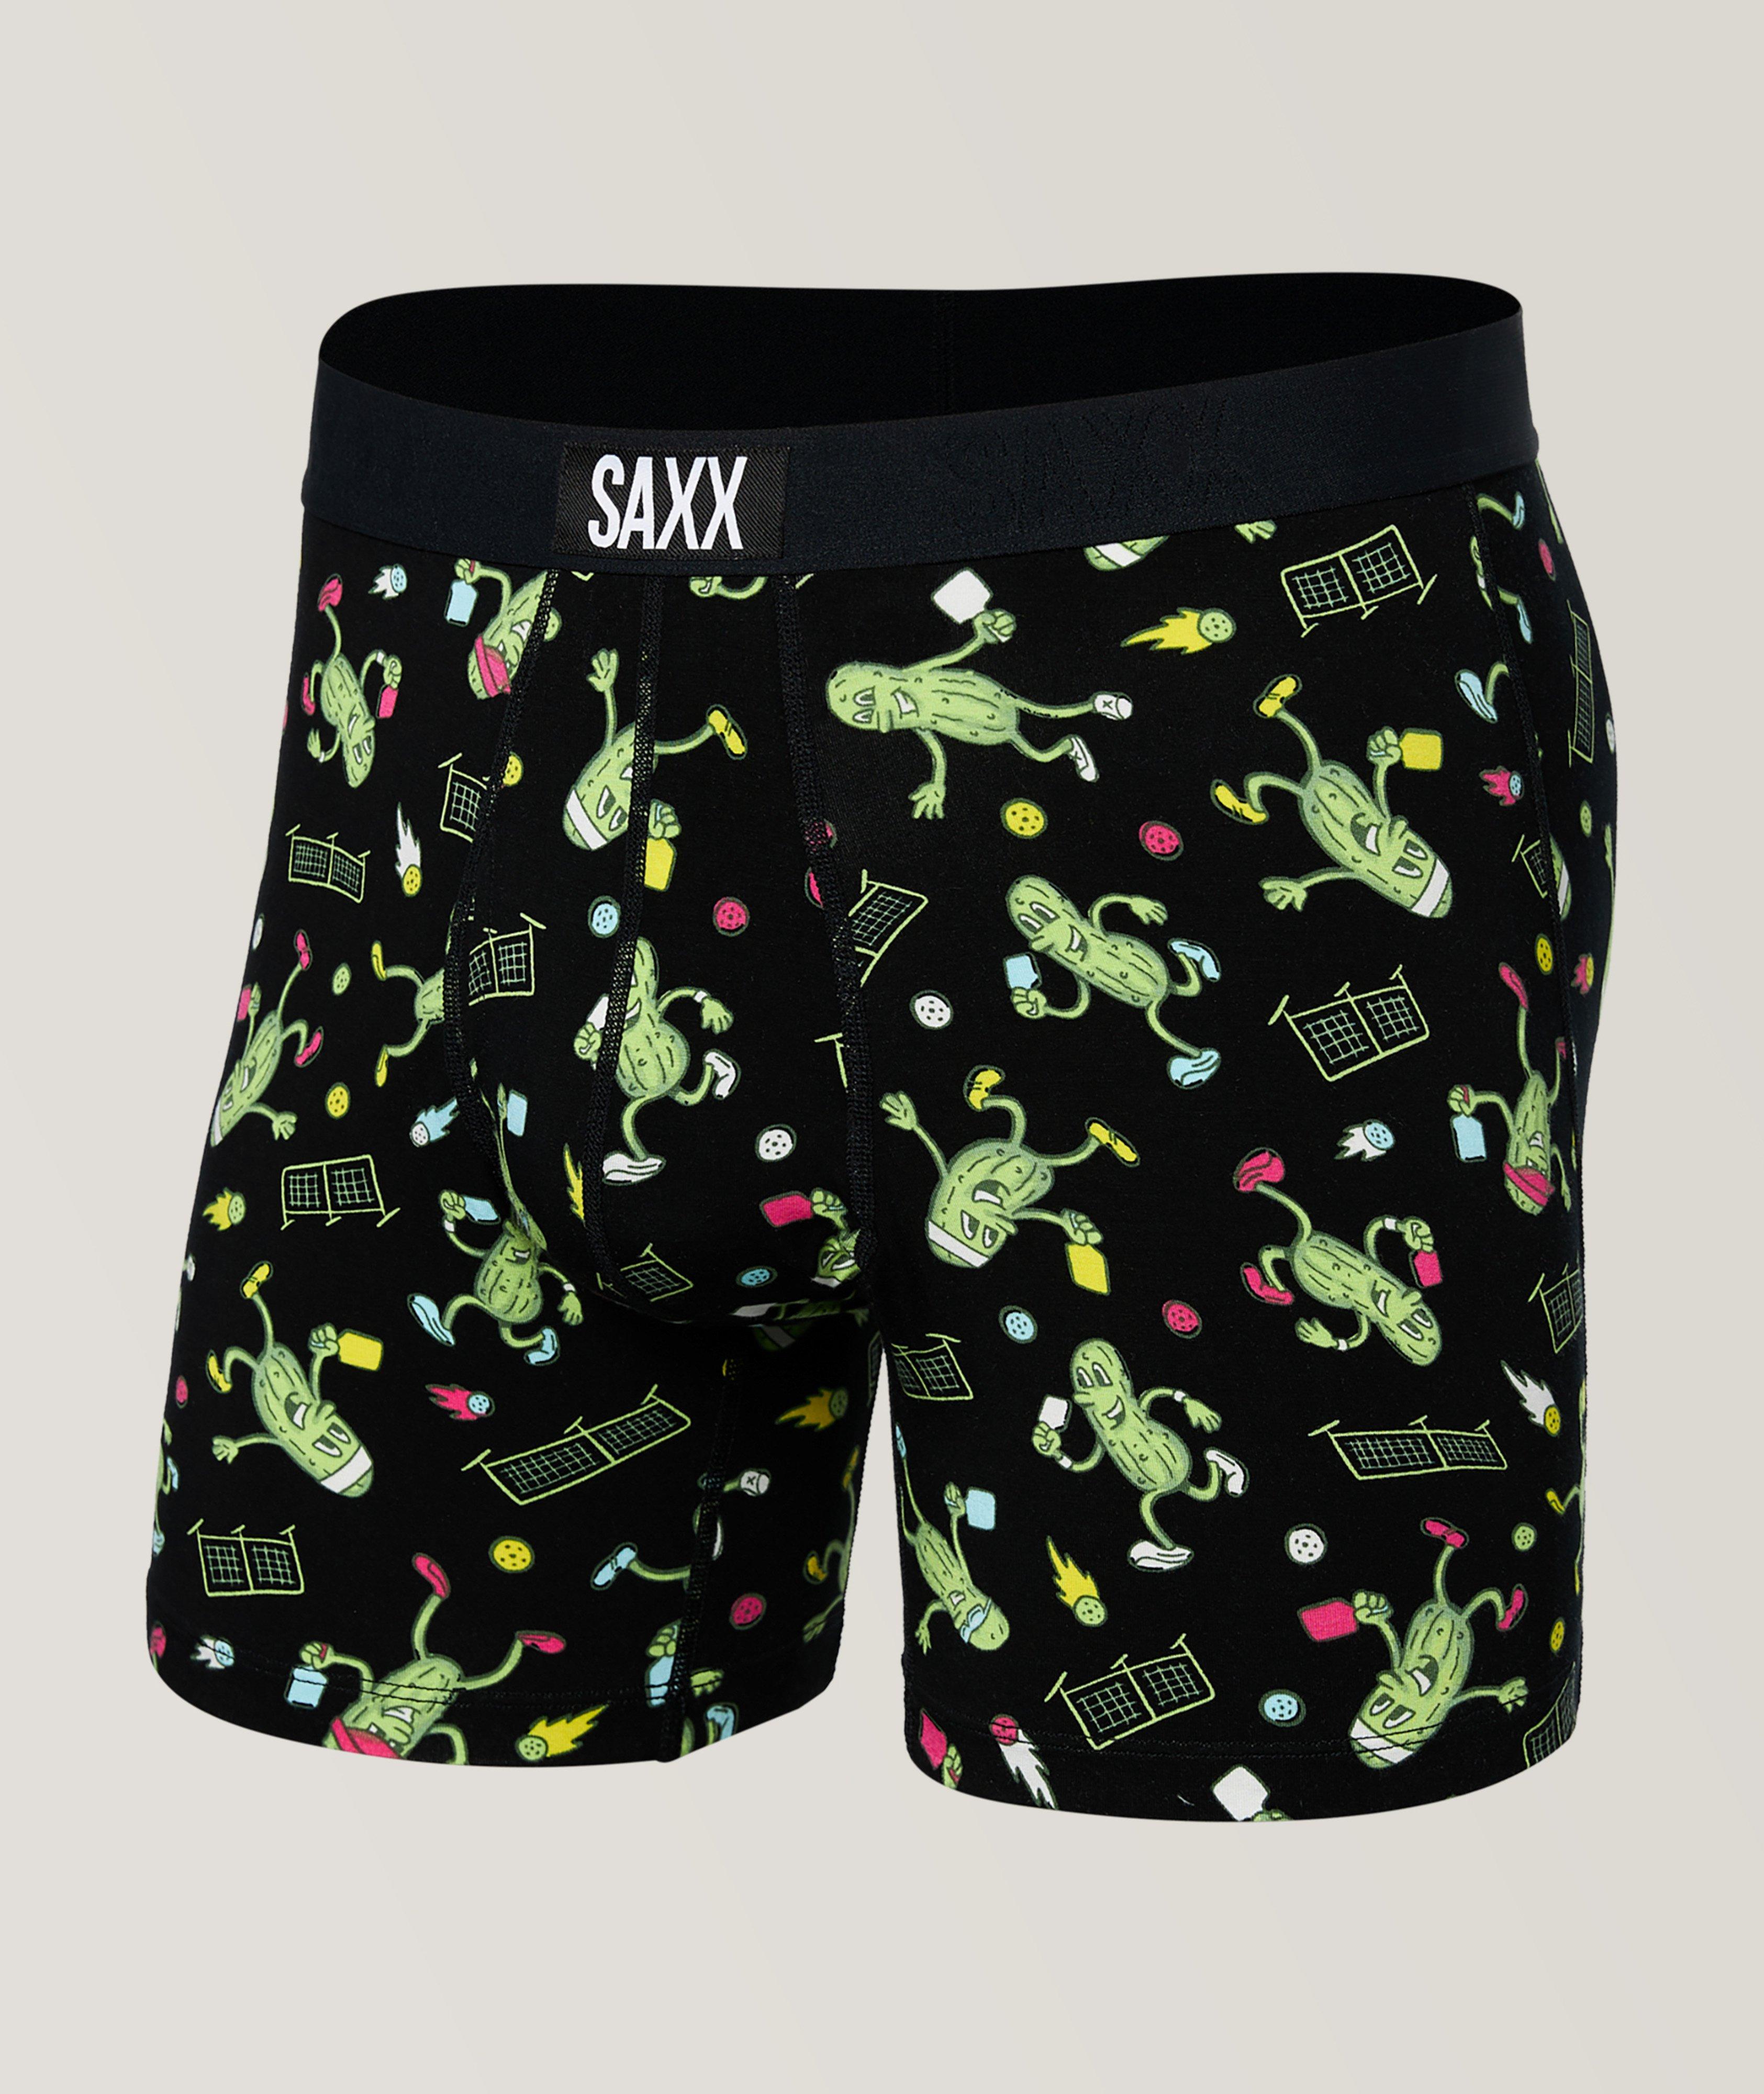 SAXX, Underwear, Boxers, Briefs & More